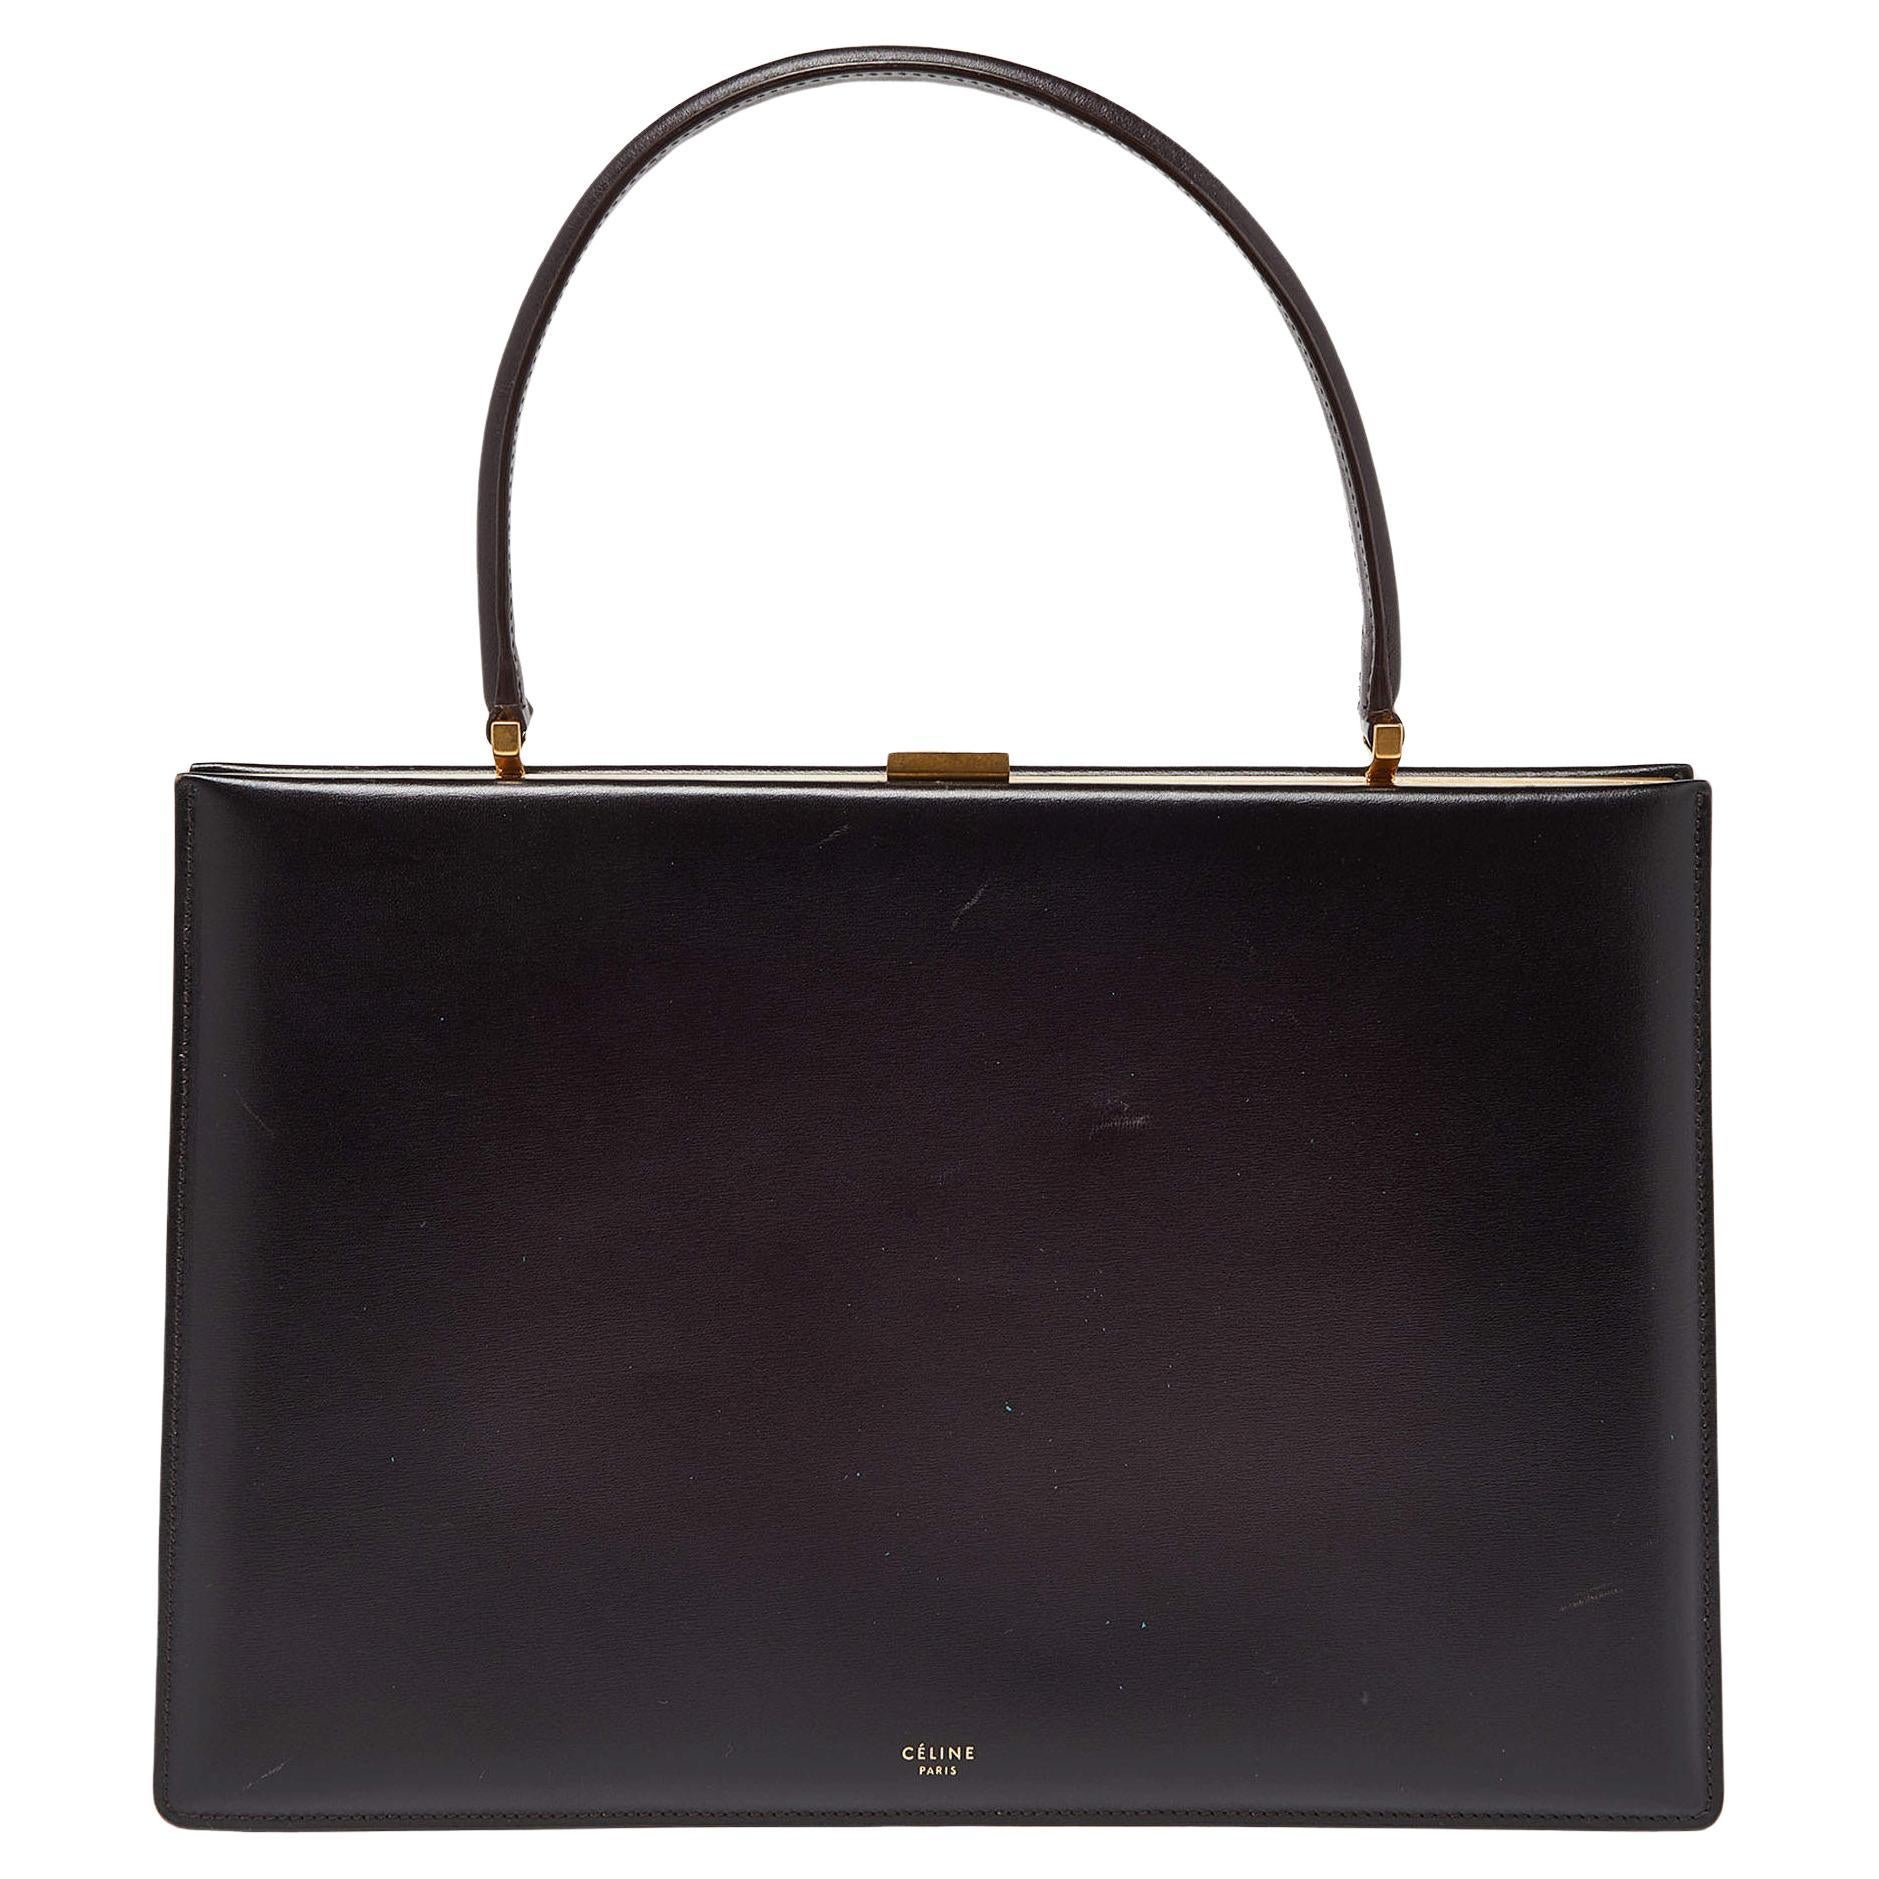 Celine Burgundy Leather Frame Top Handle Bag